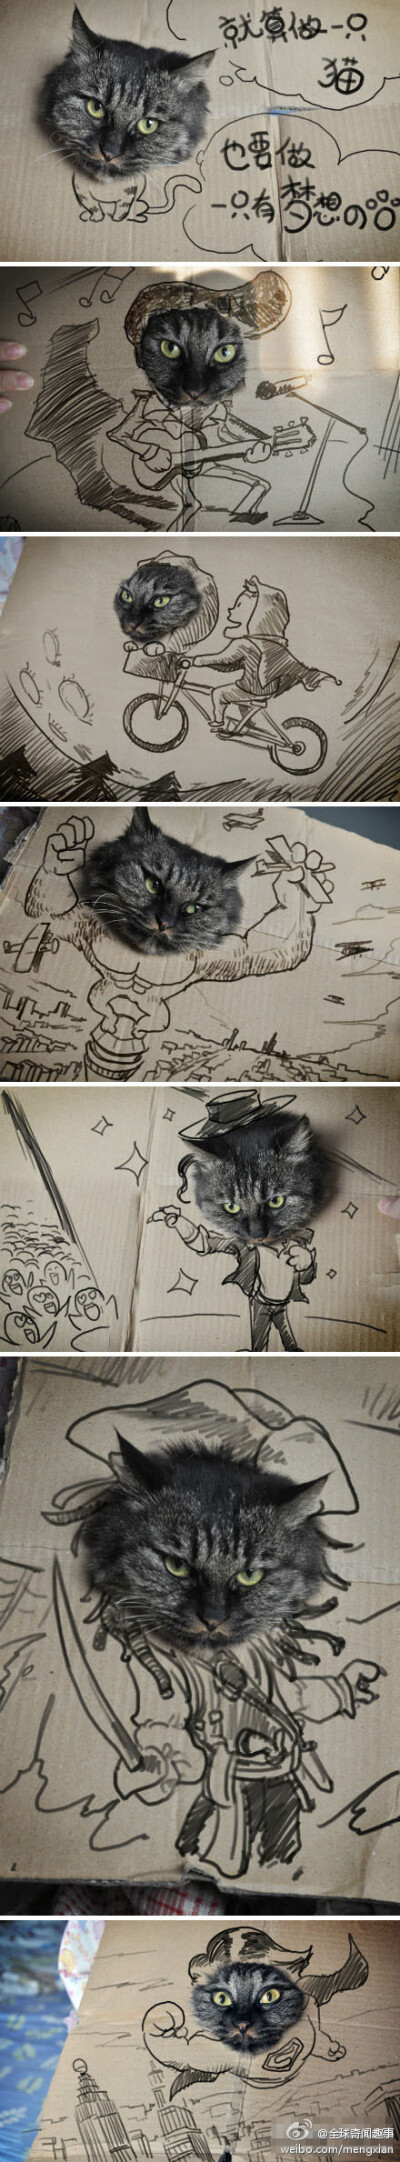 当猫遇上画家